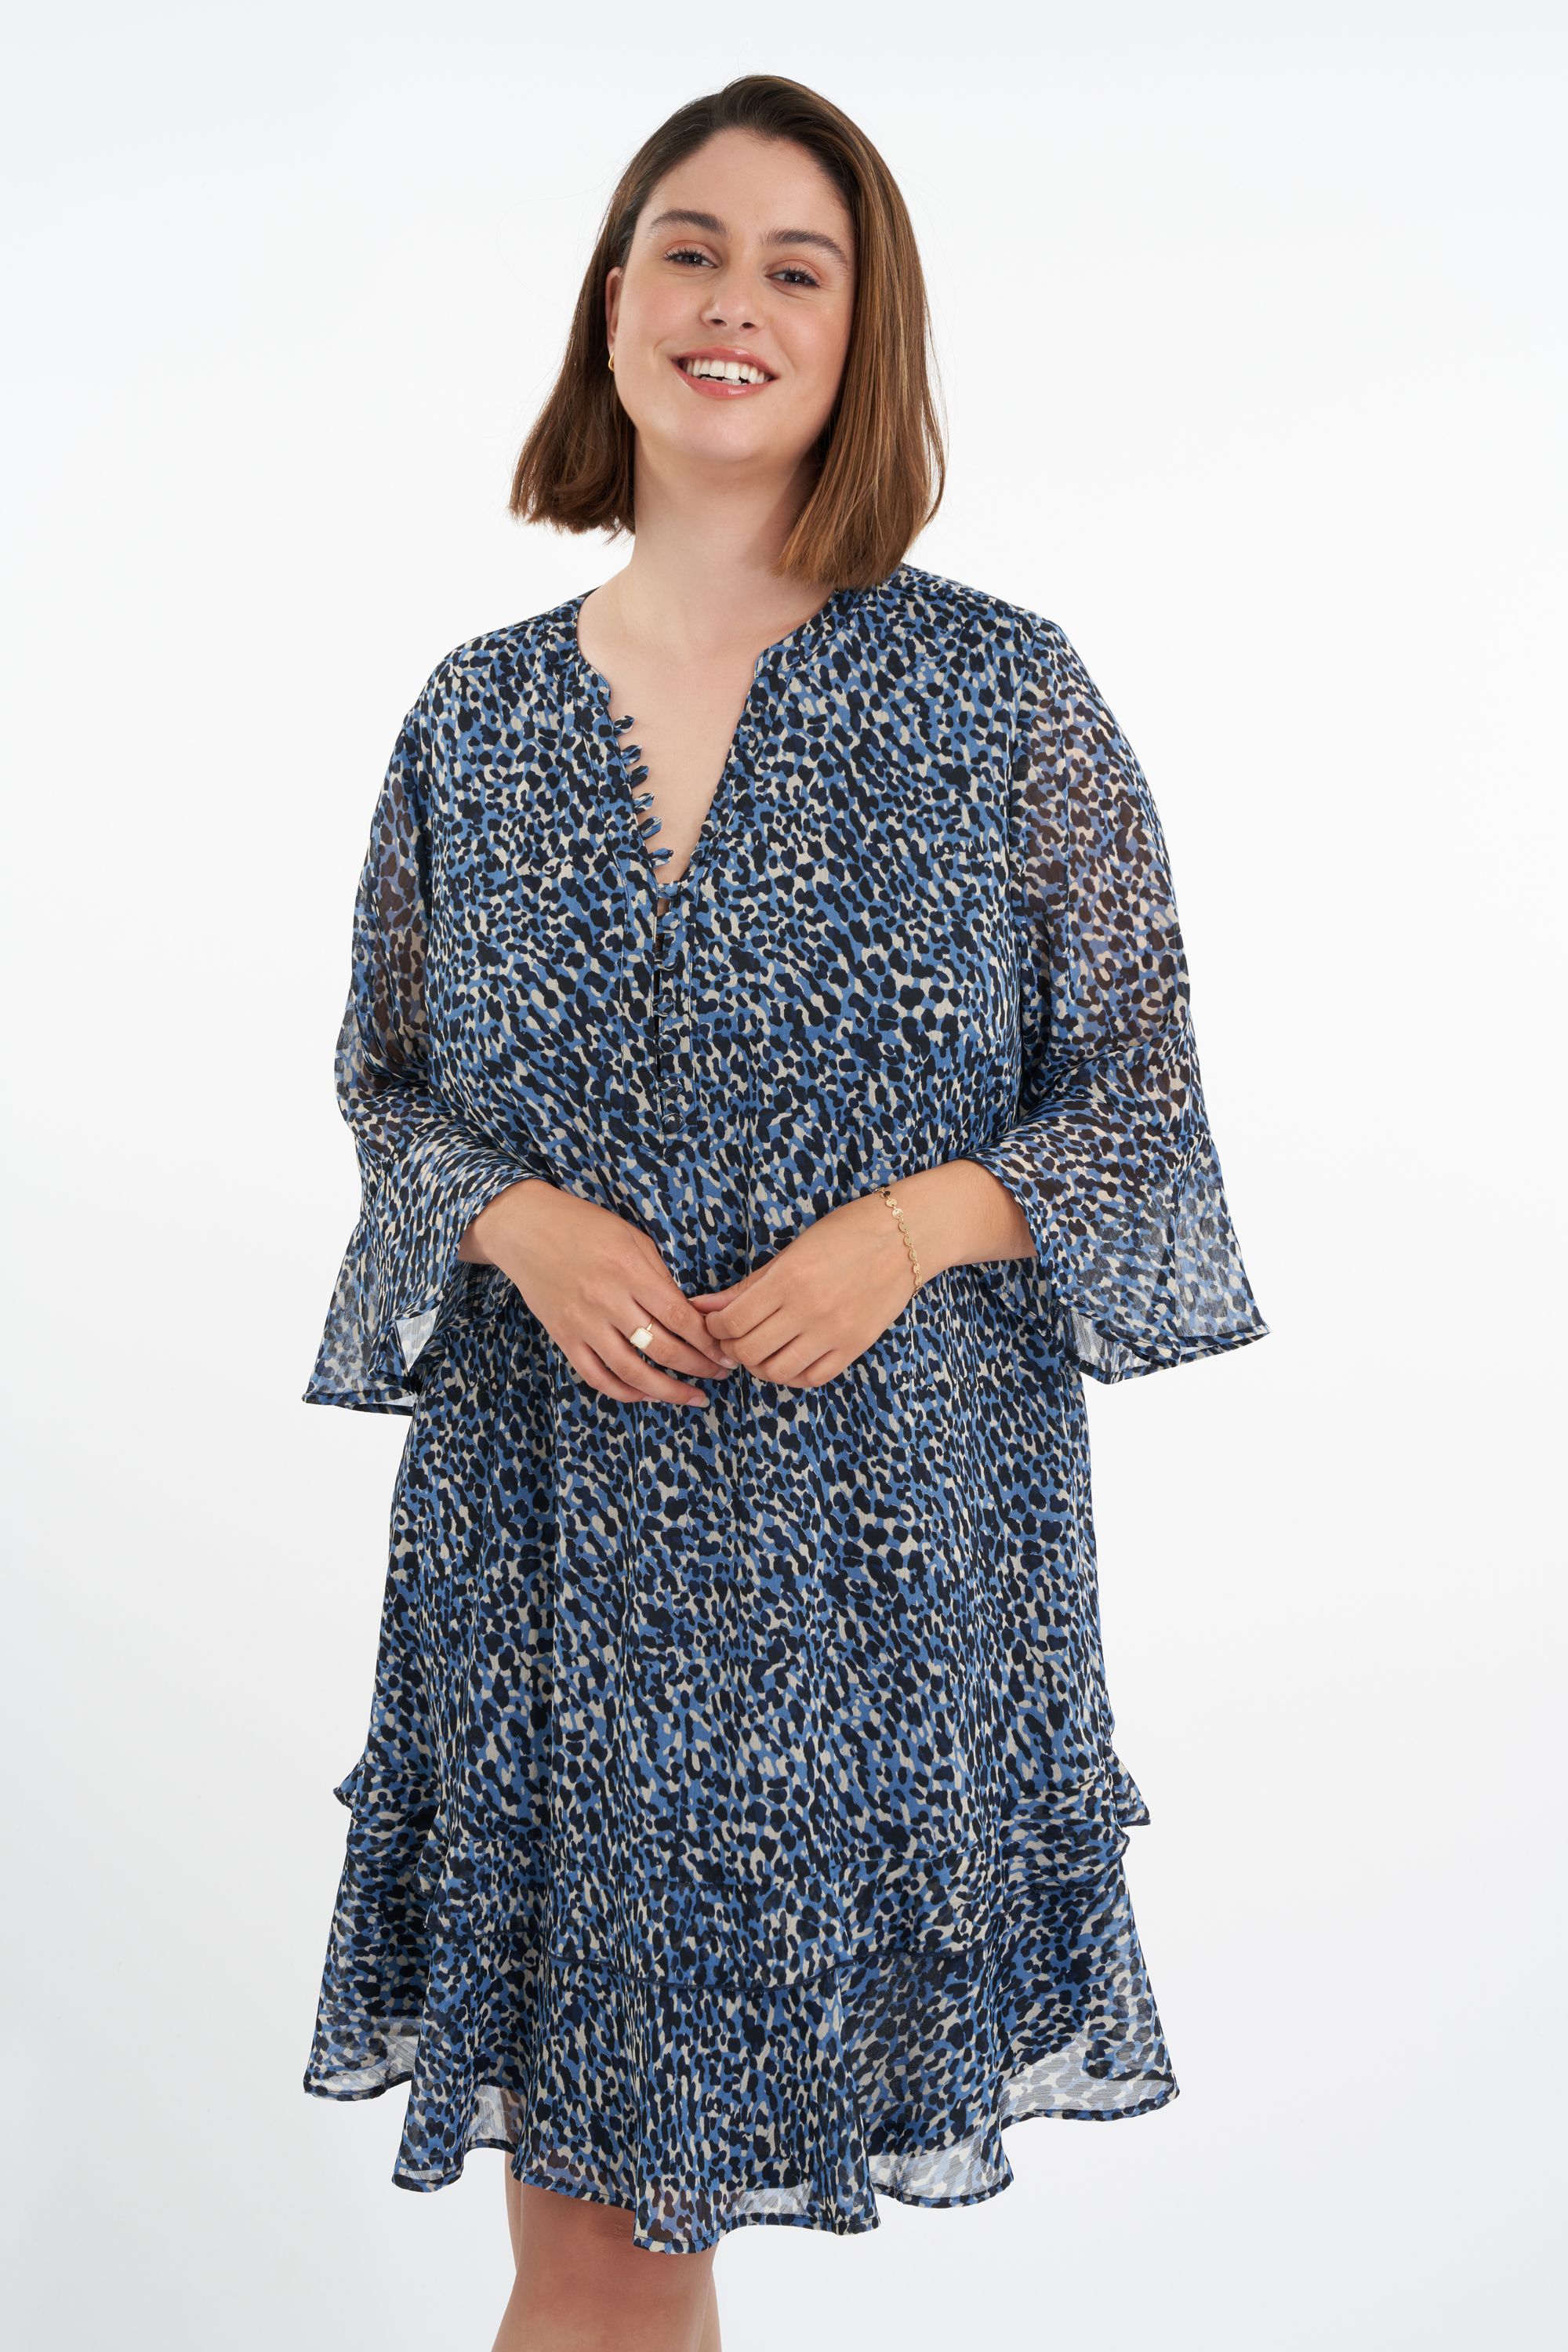 Damen Kleid mit Rüschen und Print | MS Mode